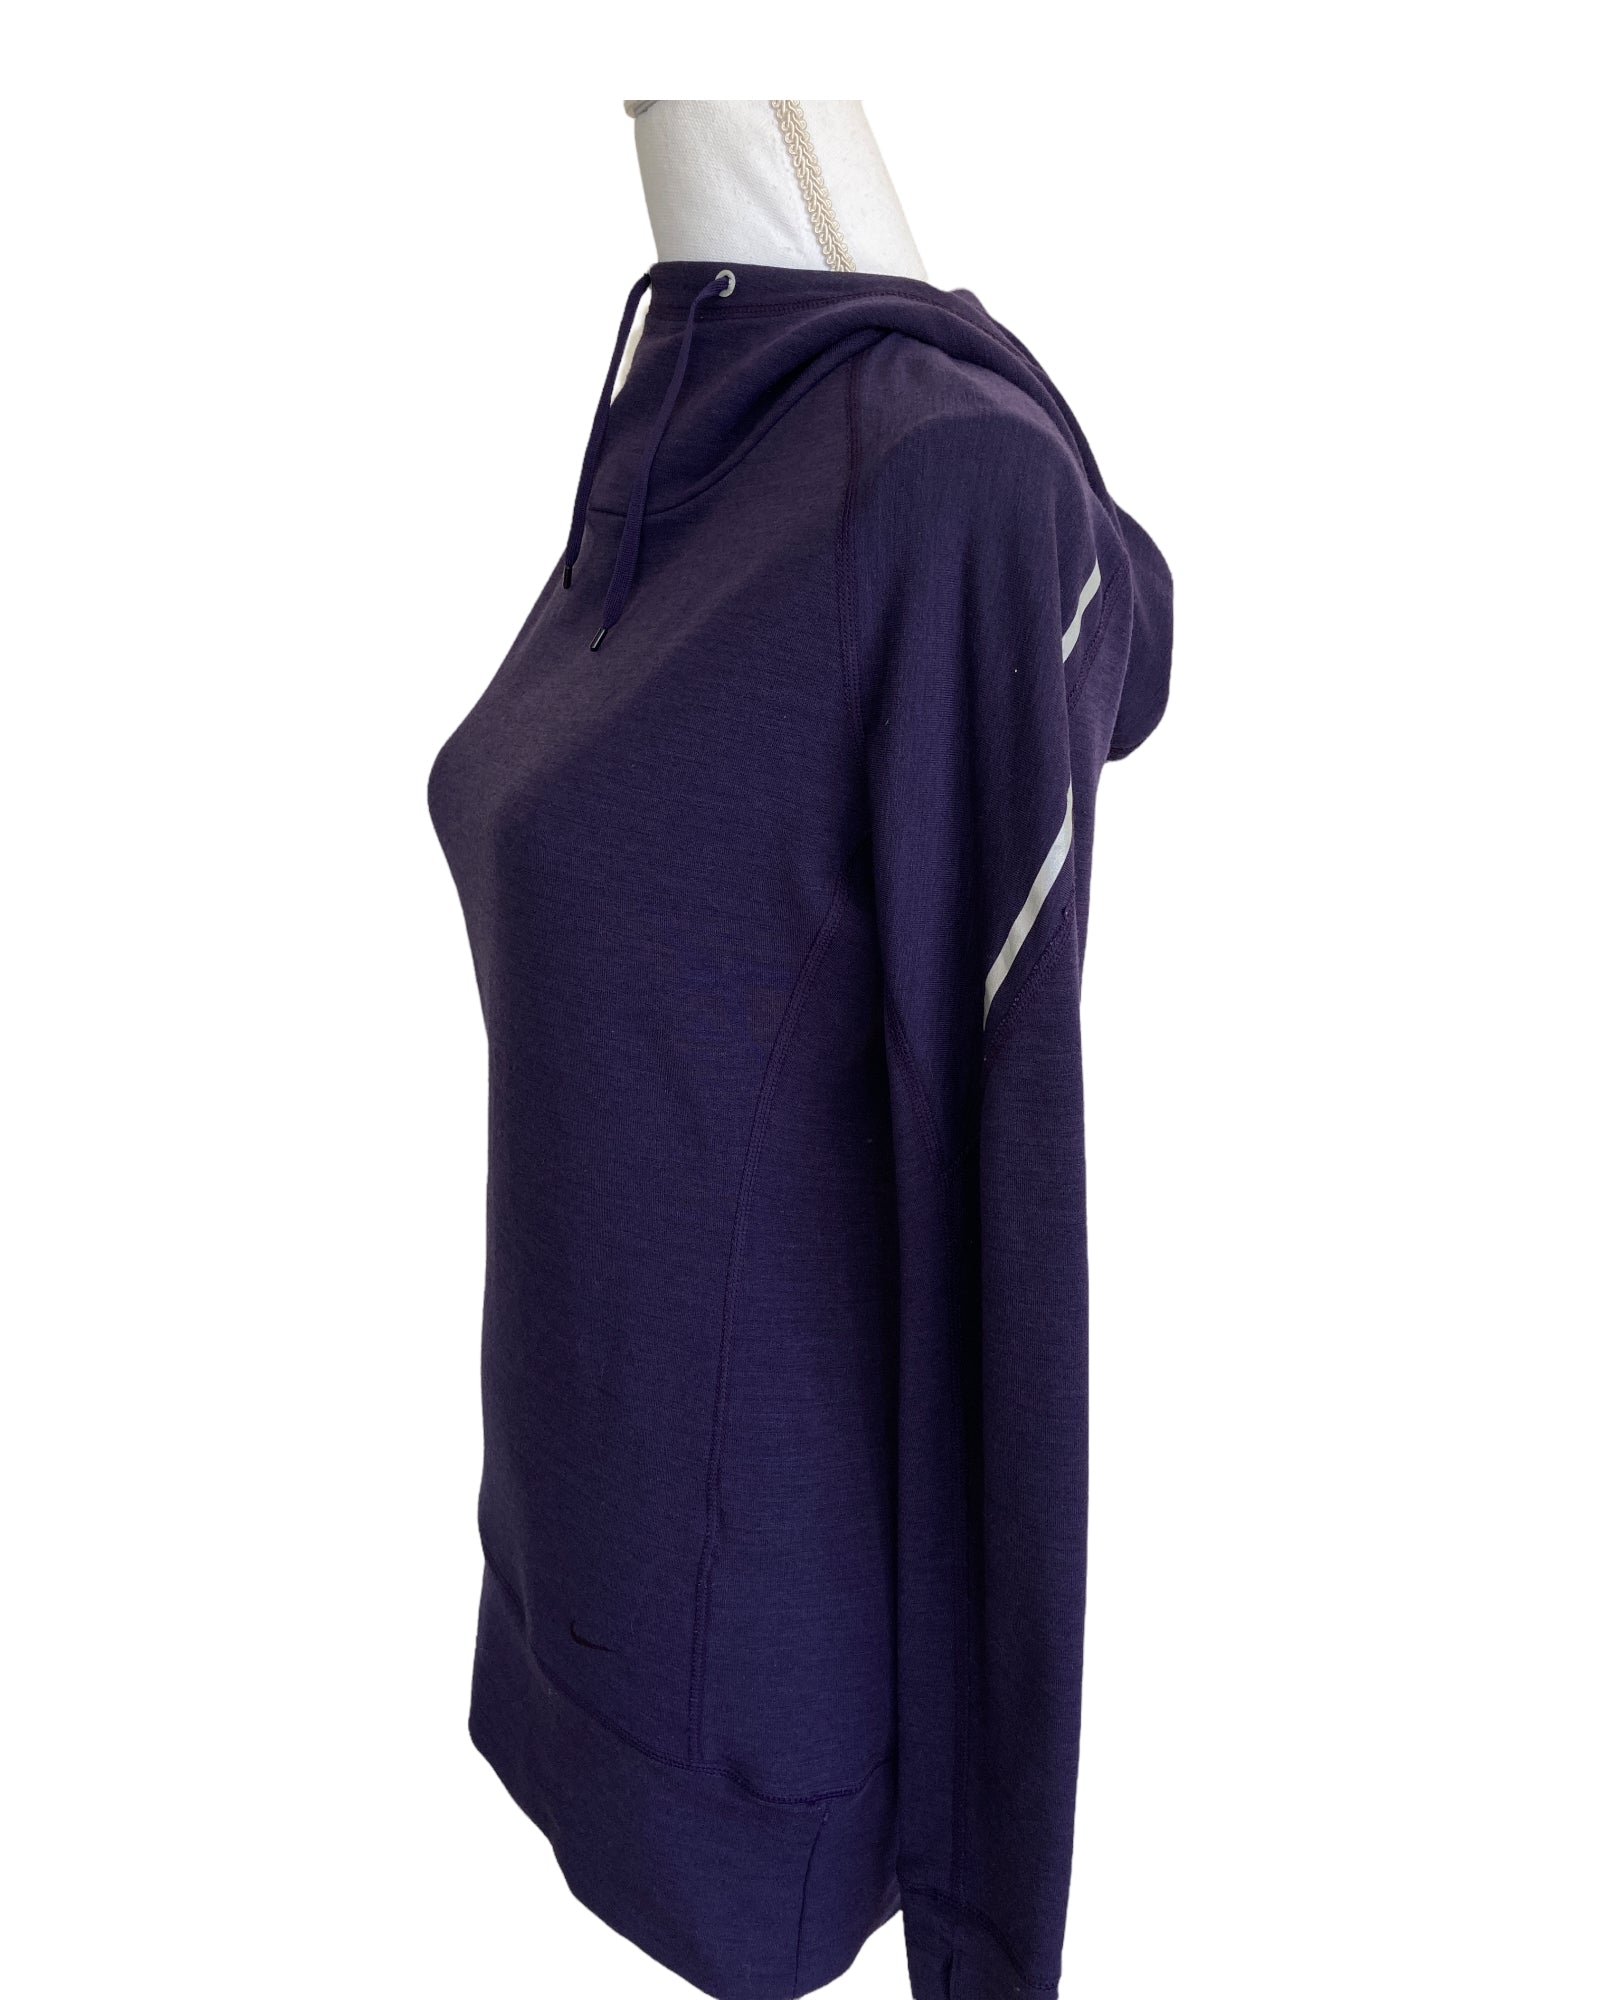 Nike Dry-Fit Purple Hoodie Jacket, S